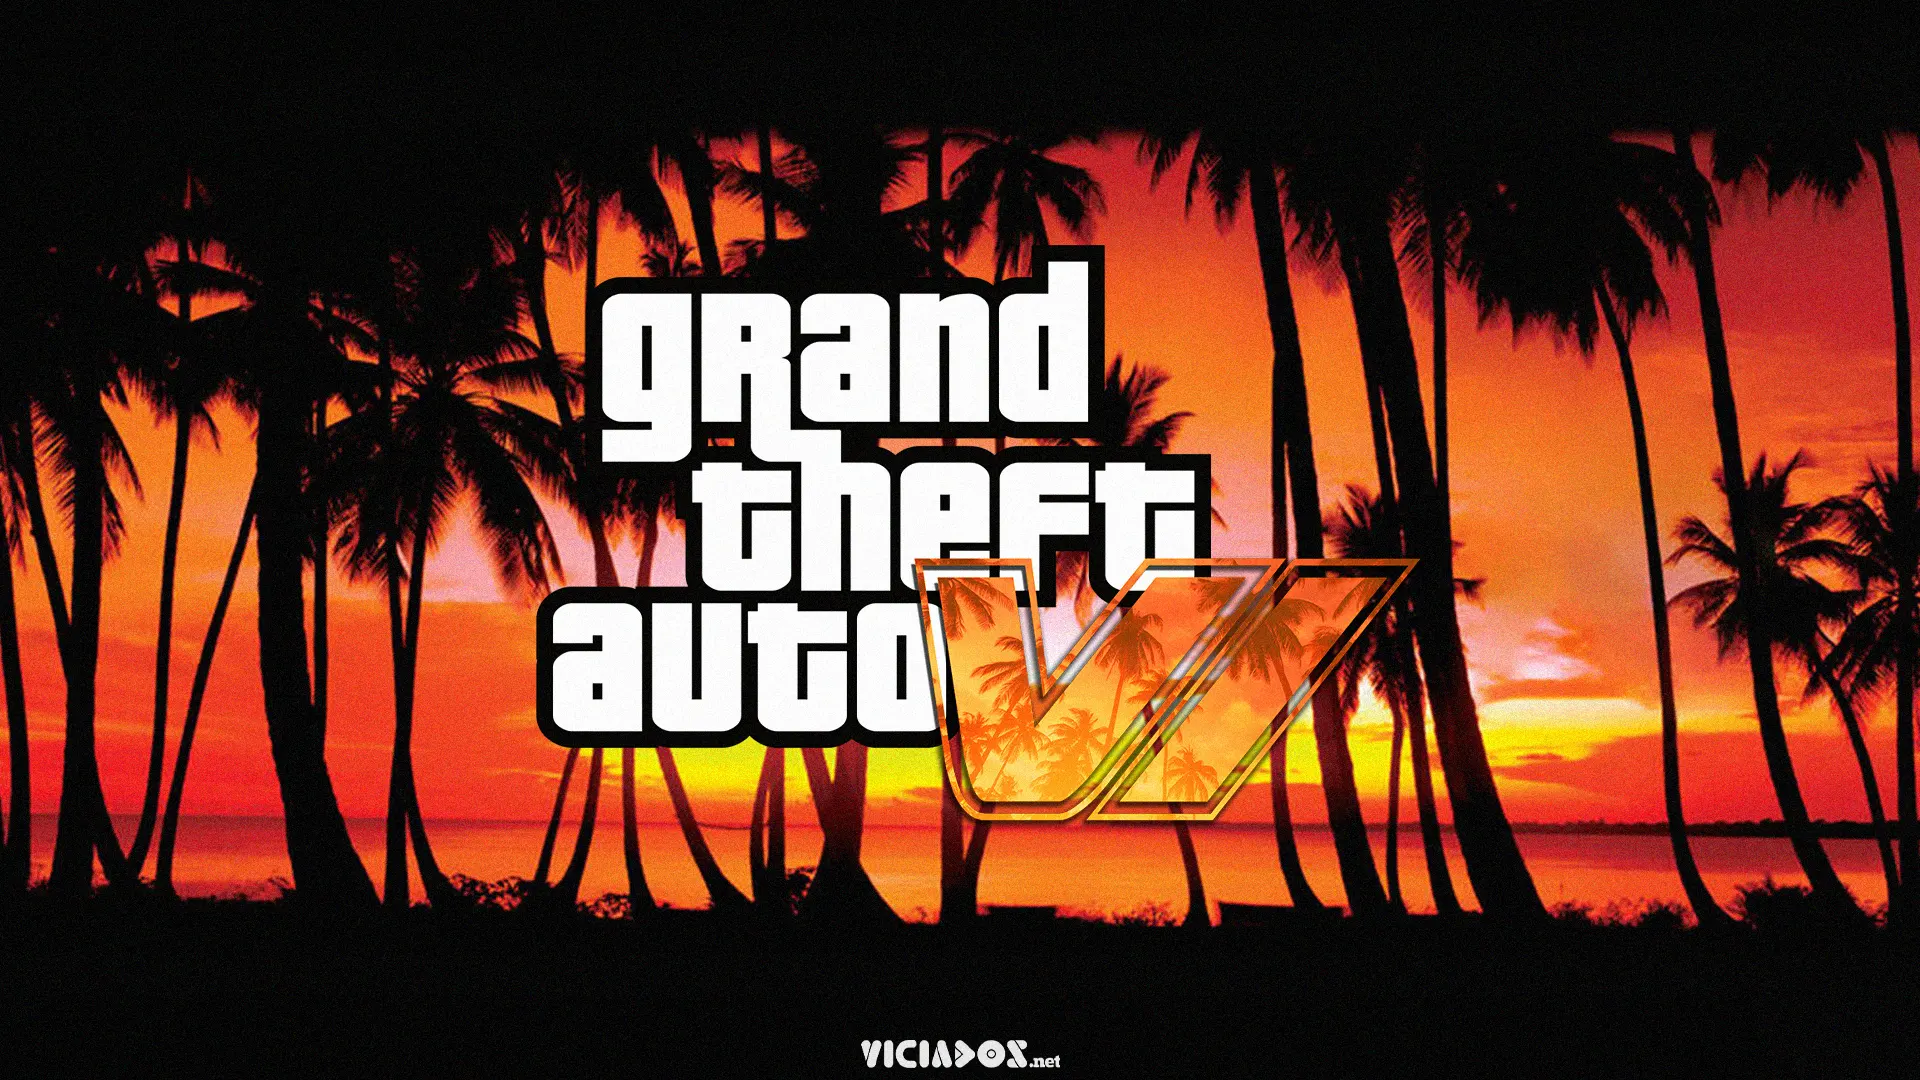 GTA VI | Fãs acreditam que Rockstar Games está fazendo um teaser de Grand Theft Auto 6 2022 Viciados